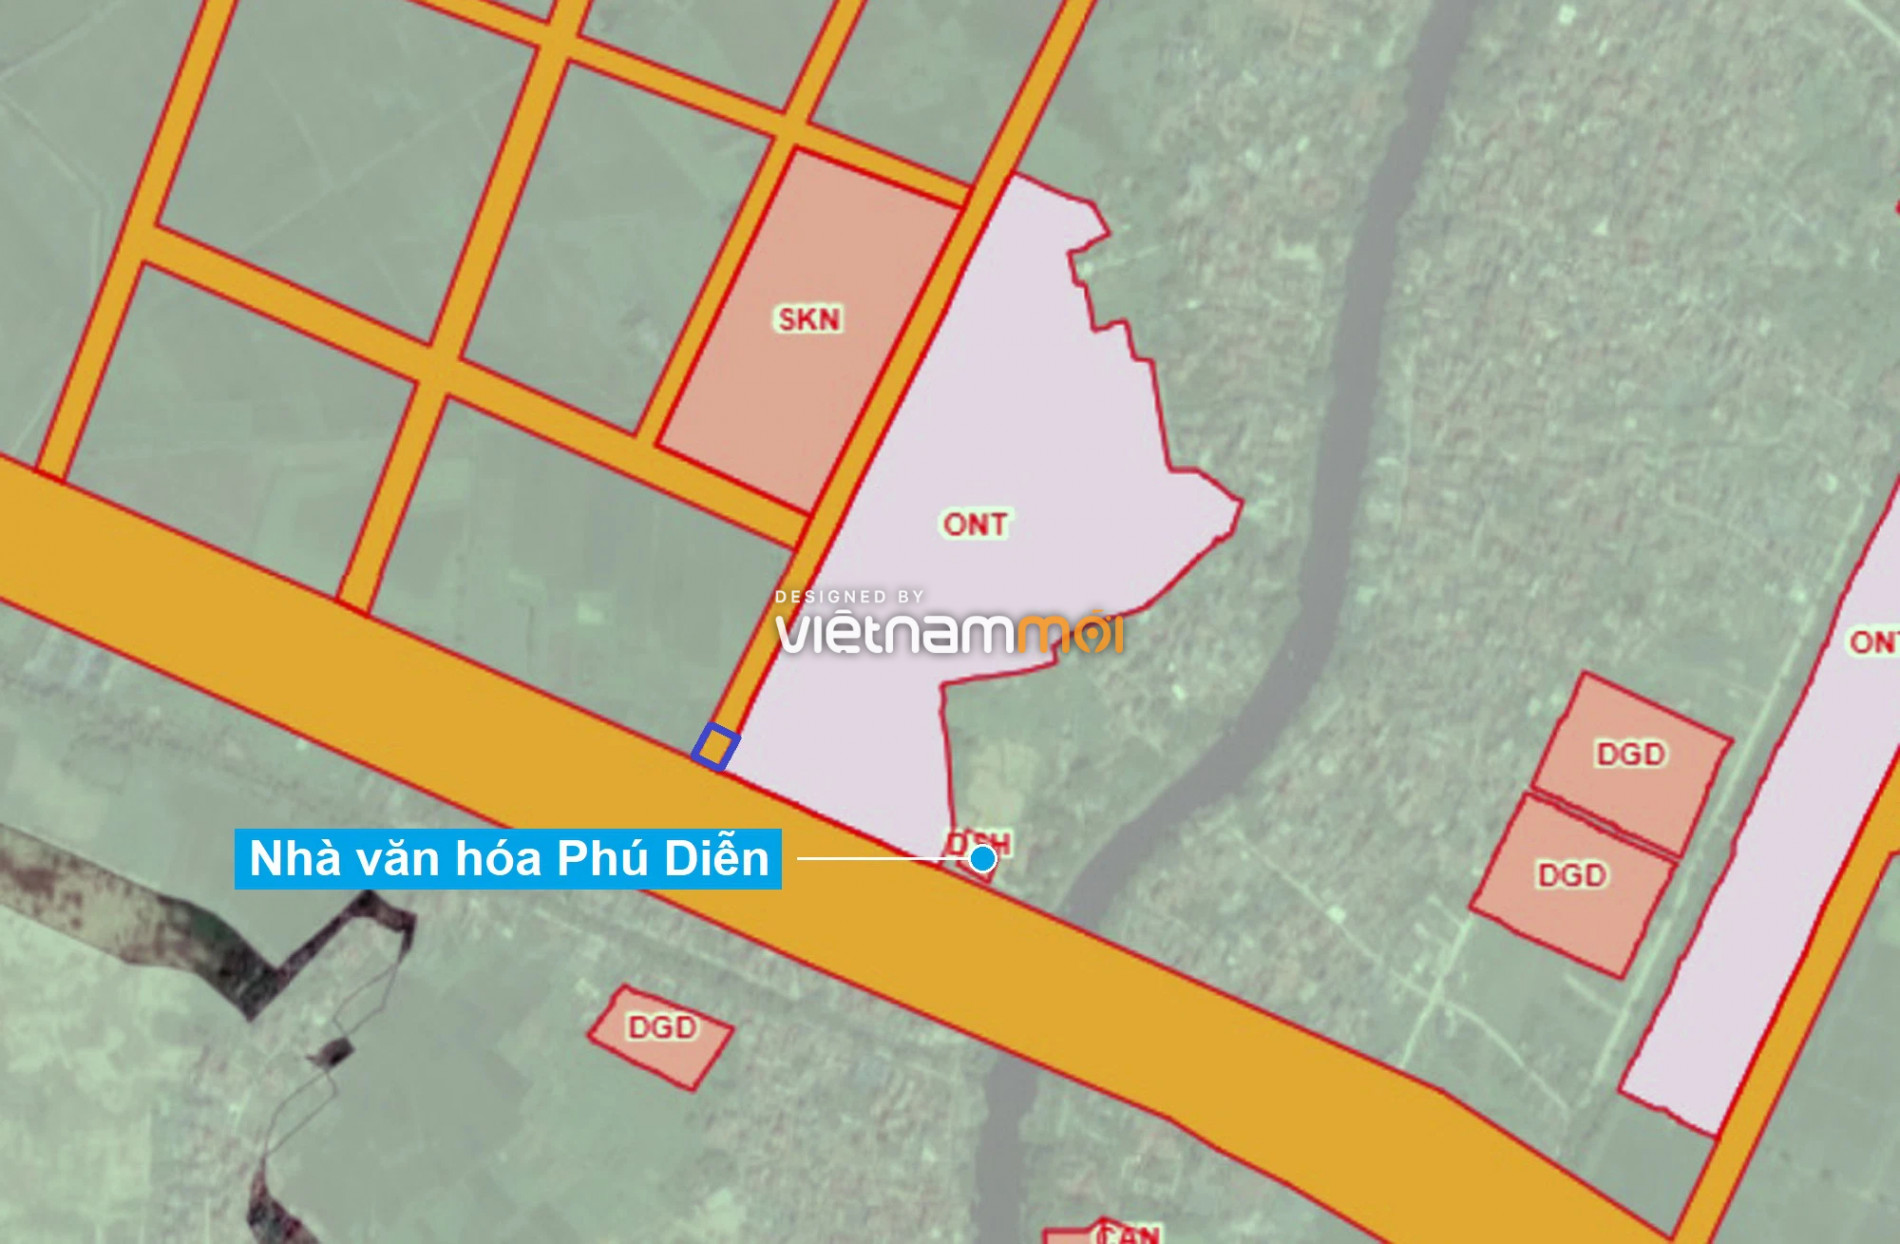 Những khu đất sắp thu hồi để mở đường ở xã Hữu Hòa, Thanh Trì, Hà Nội (phần 5) - Ảnh 15.